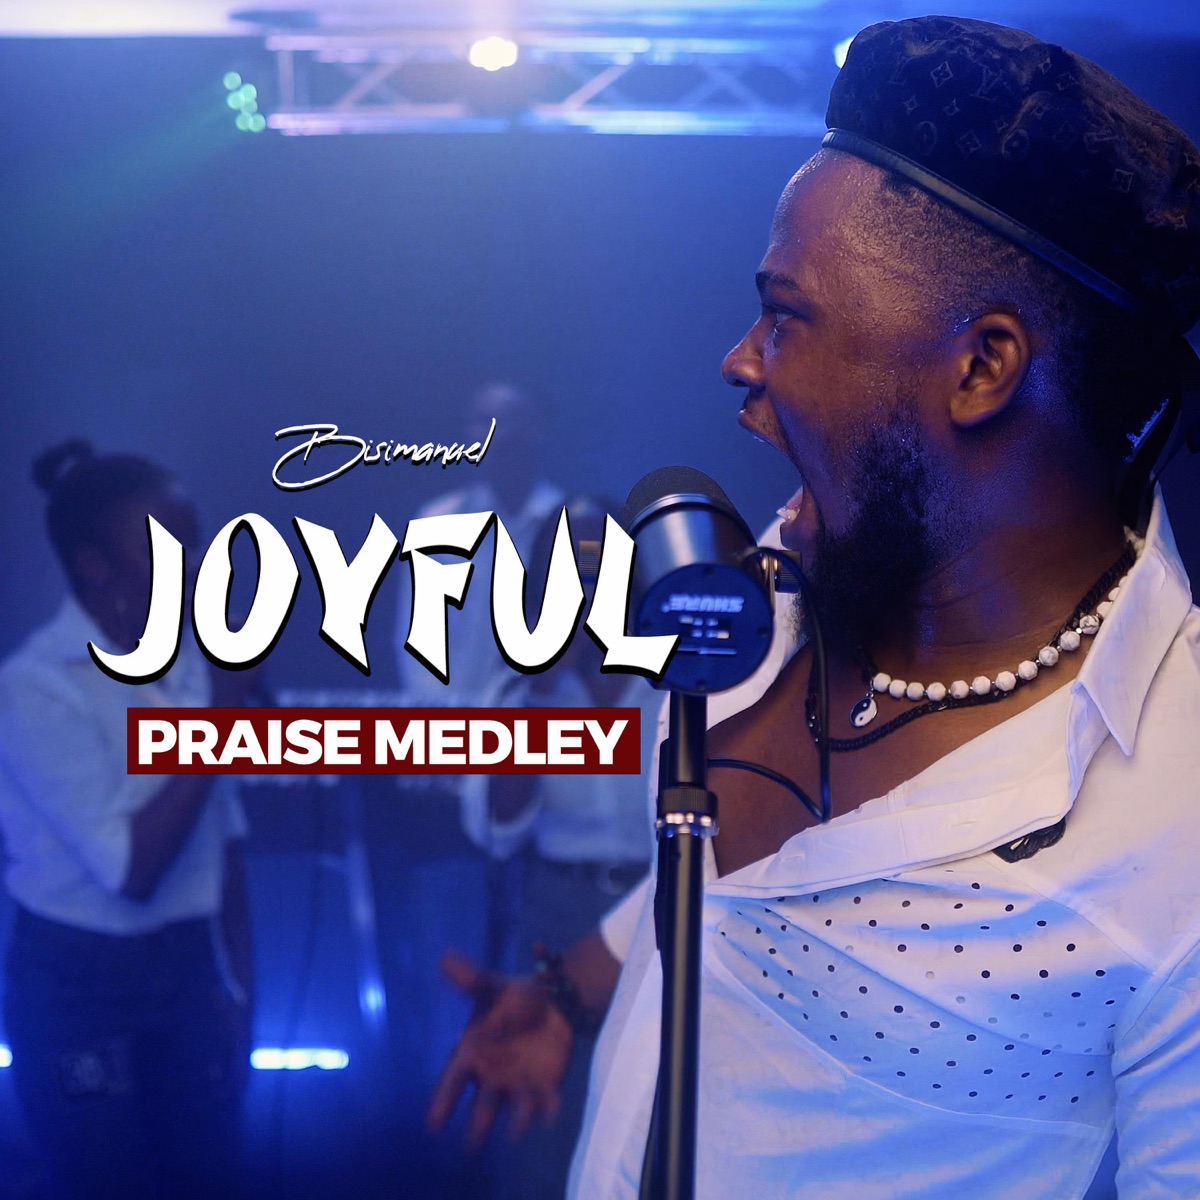 BisiManuel - Joyful (Praise Medley) - Single